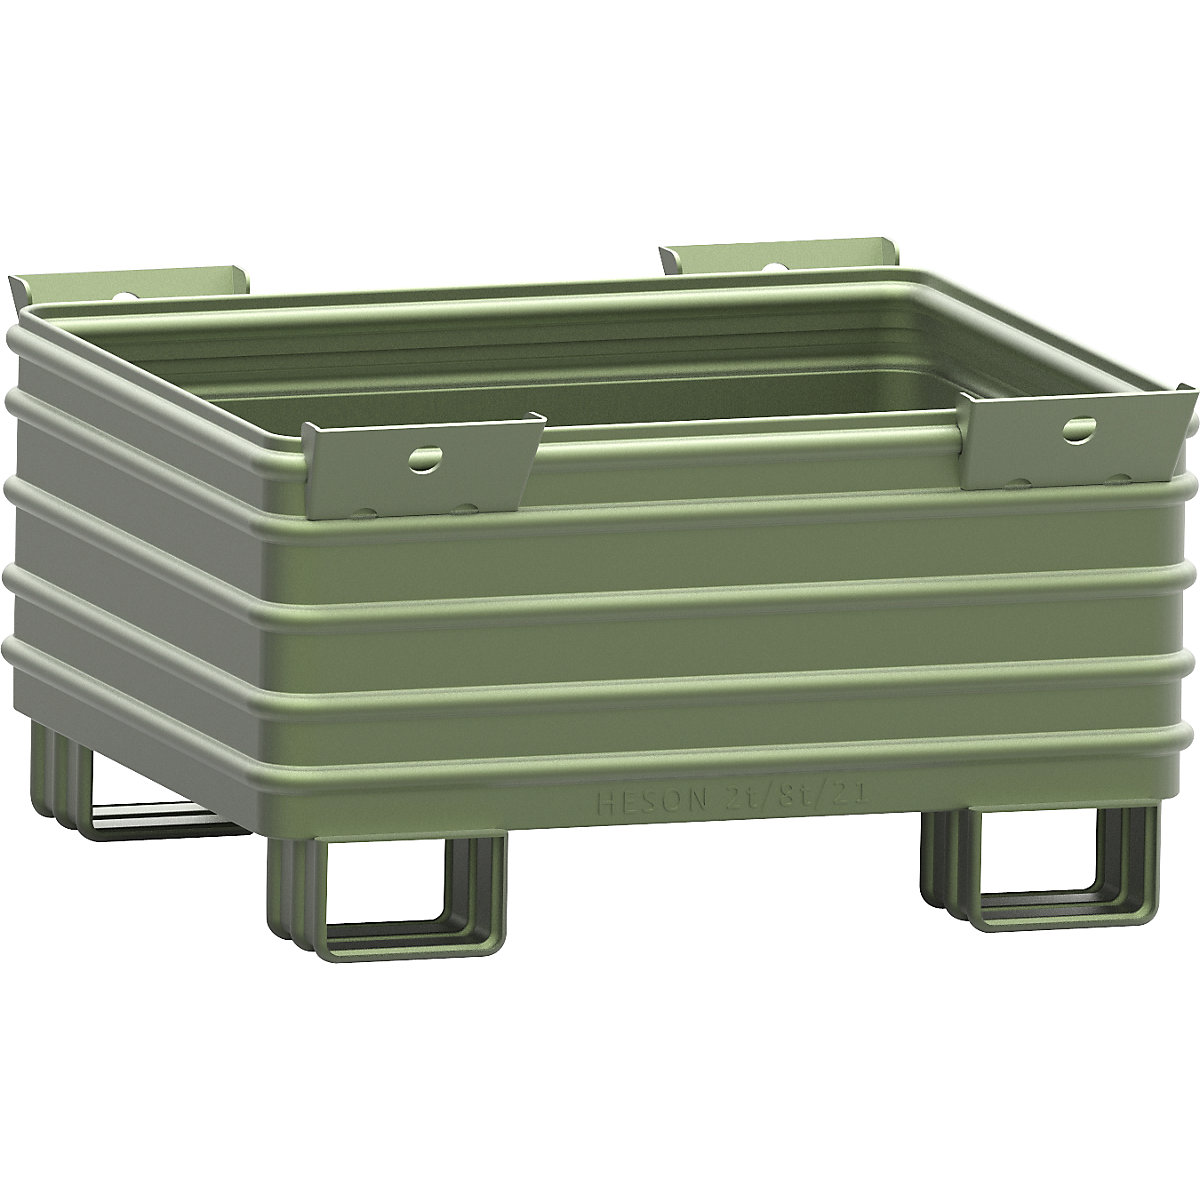 Schwerlast-Stapelbehälter Heson, BxL 1000 x 1200 mm, mit U-förmigen Füßen, grün lackiert, ab 10 Stk-6